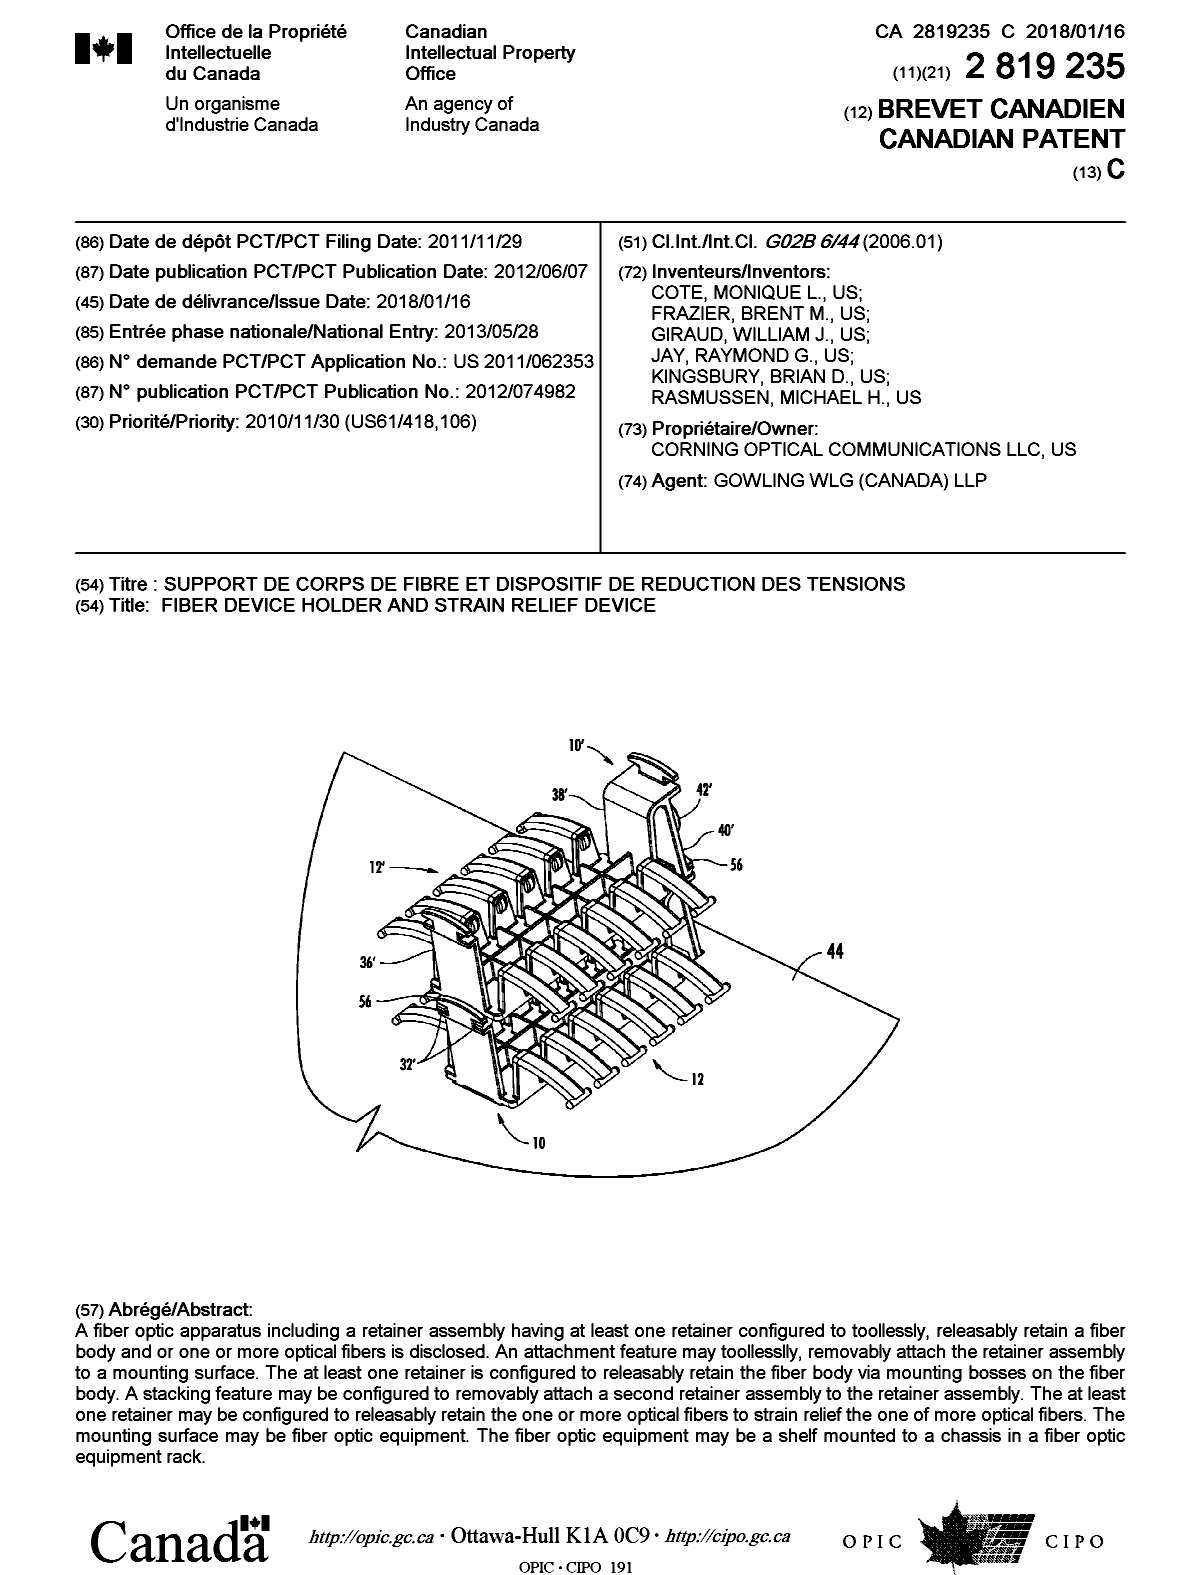 Document de brevet canadien 2819235. Page couverture 20180102. Image 1 de 1